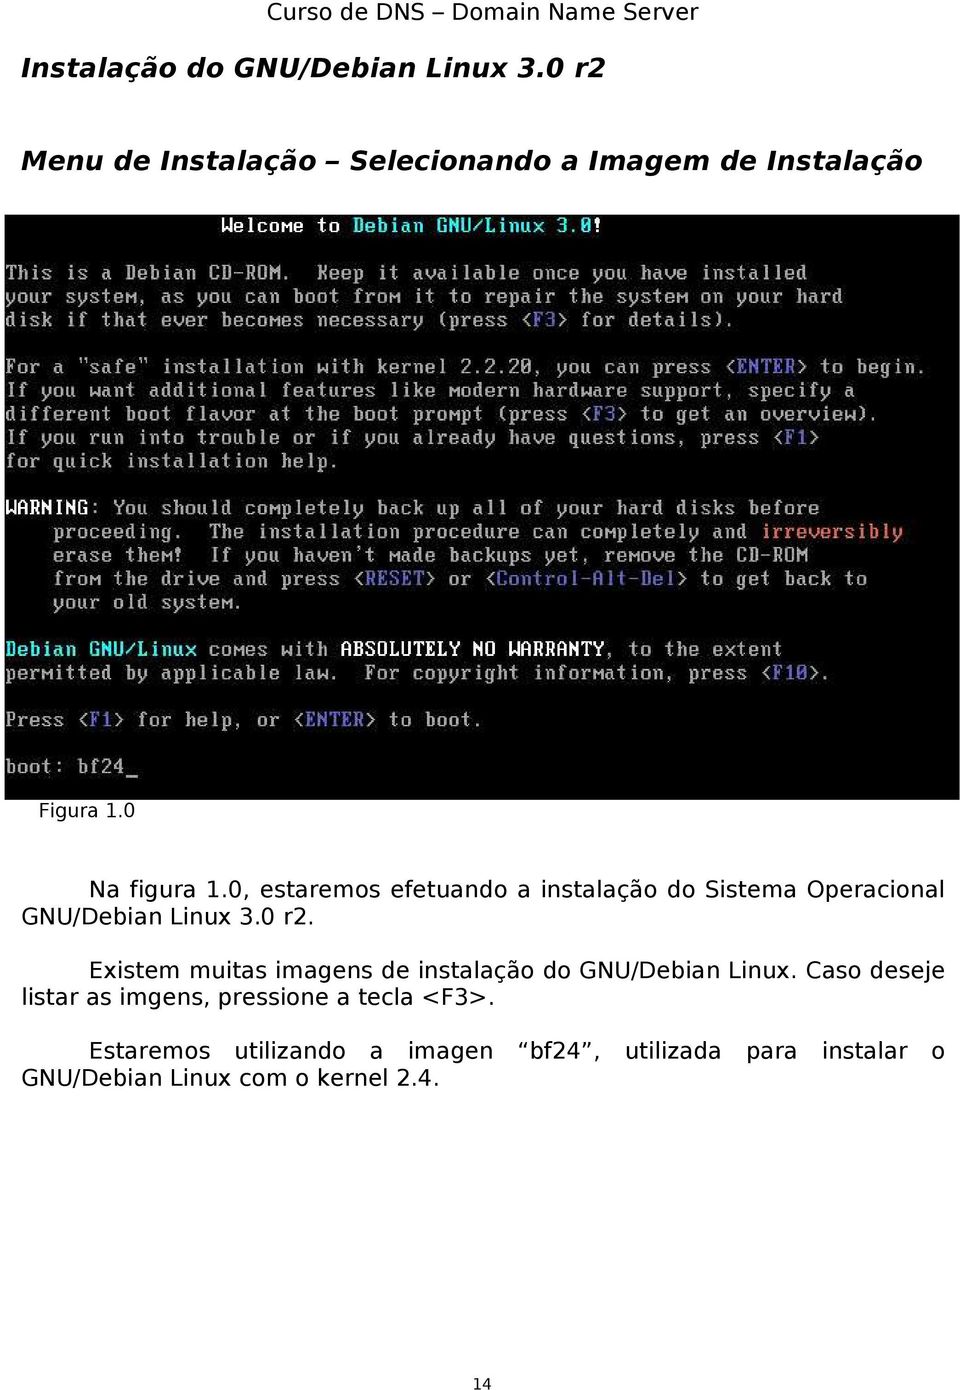 Existem muitas imagens de instalação do GNU/Debian Linux.